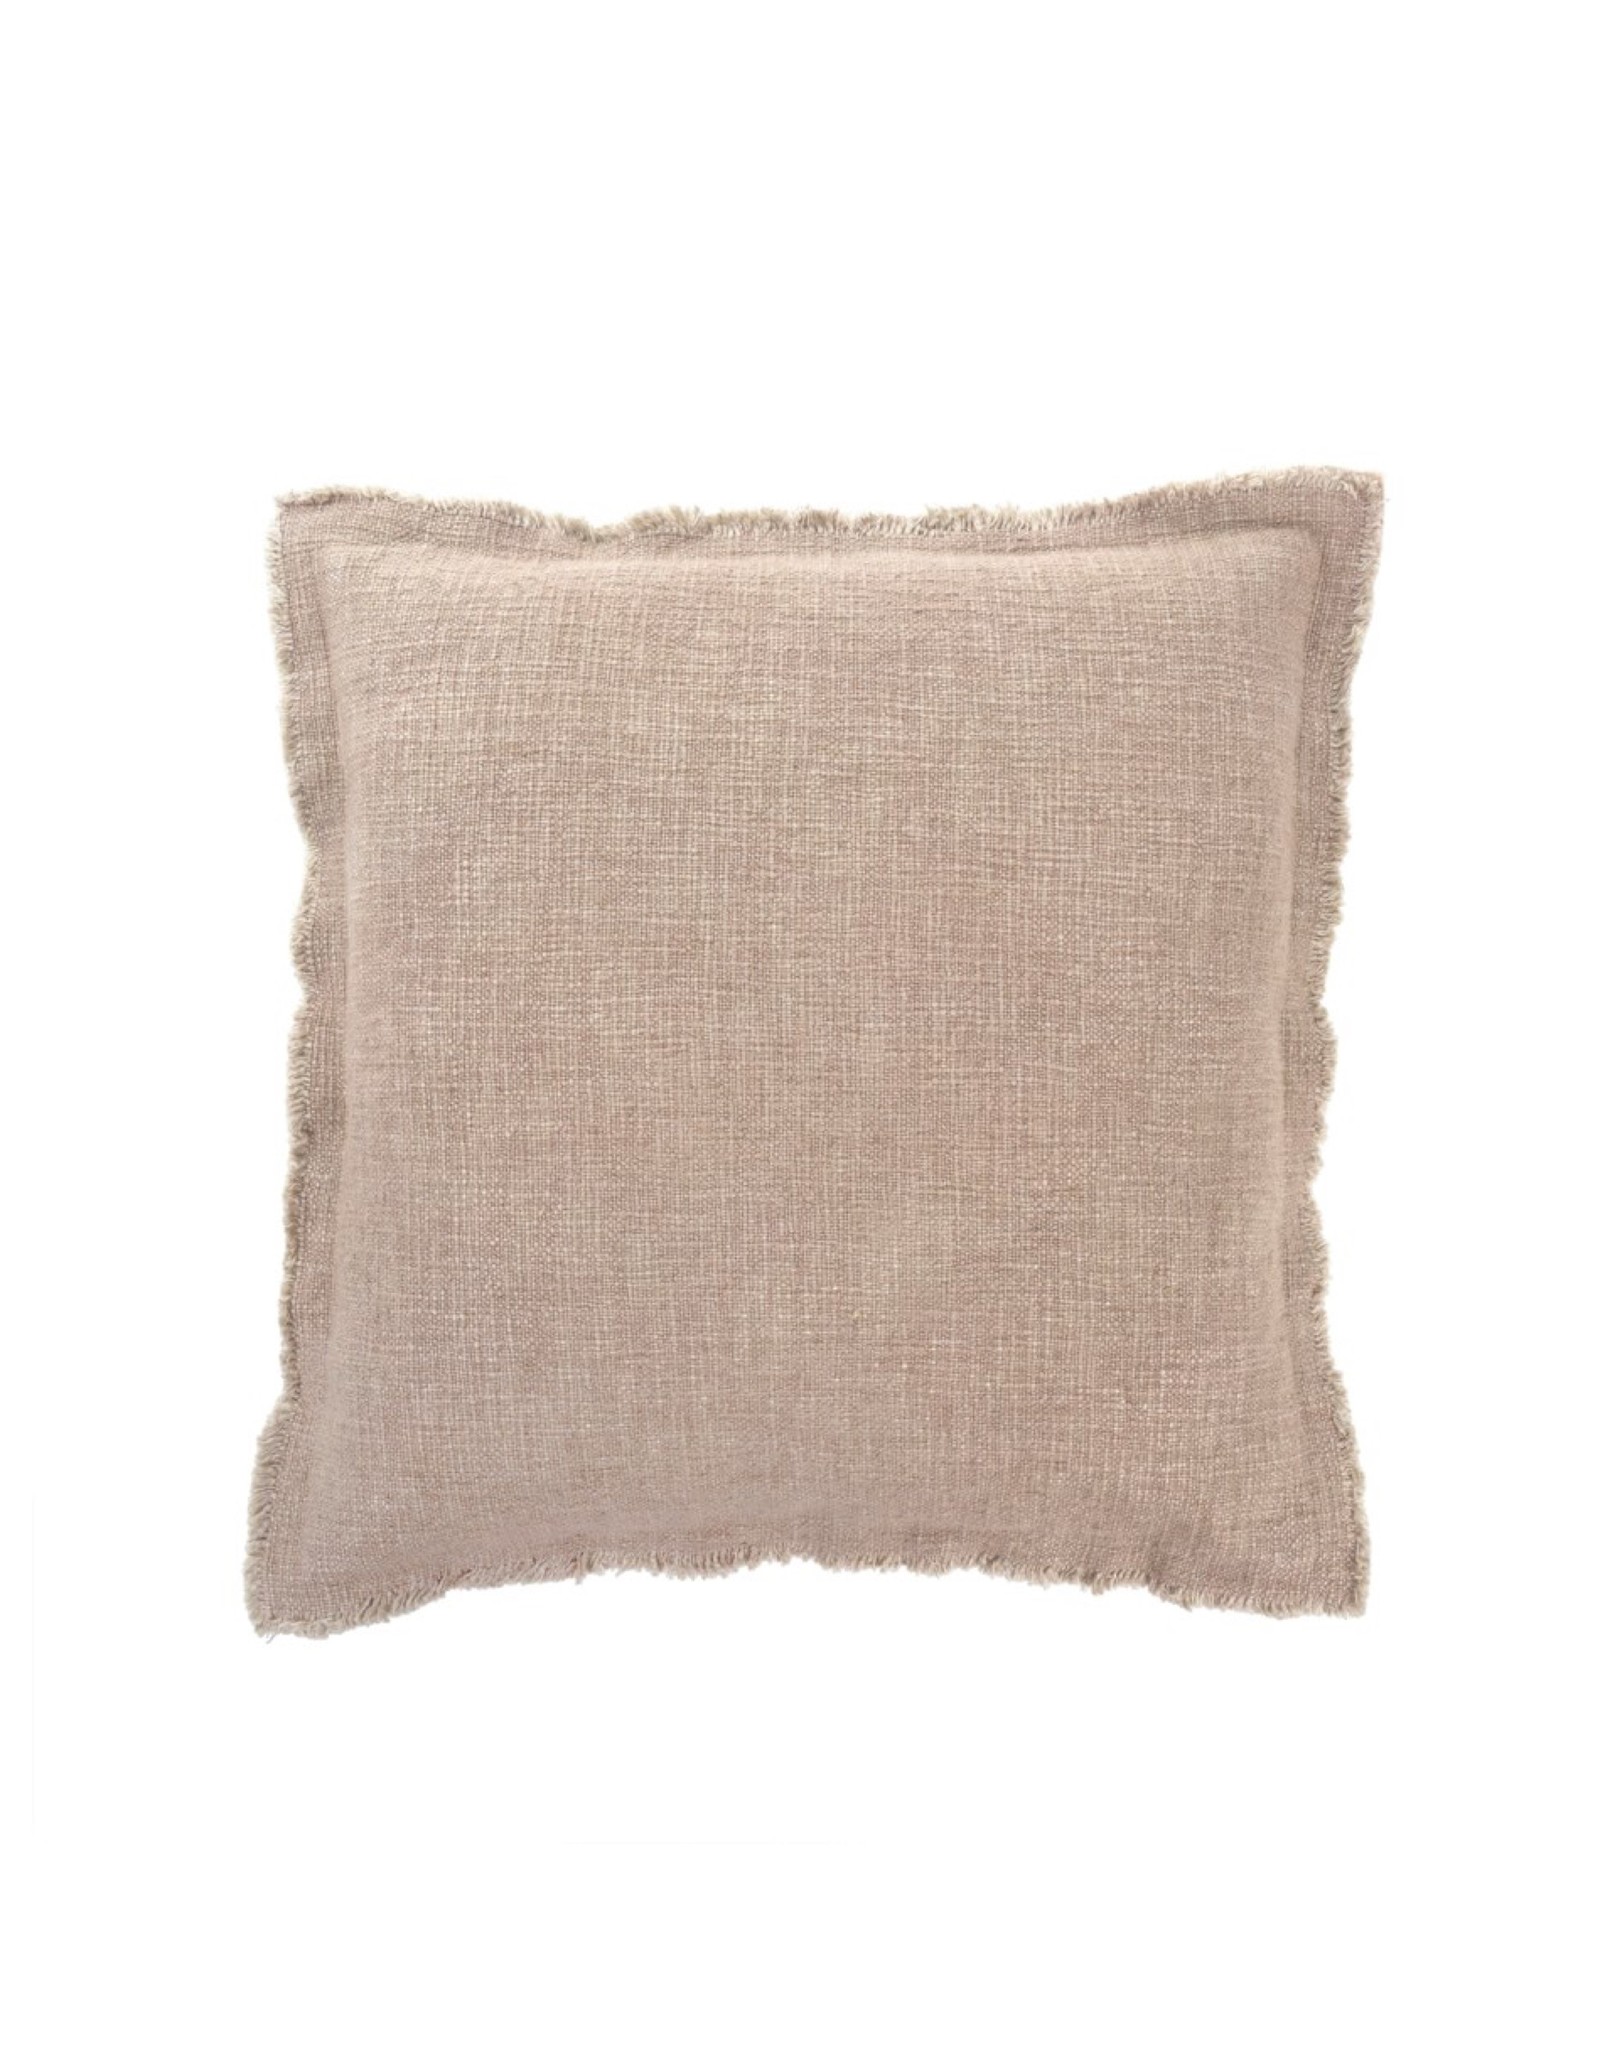 Indaba Cushions Indaba Selena Linen Blush 20 x 20 1-4331-C